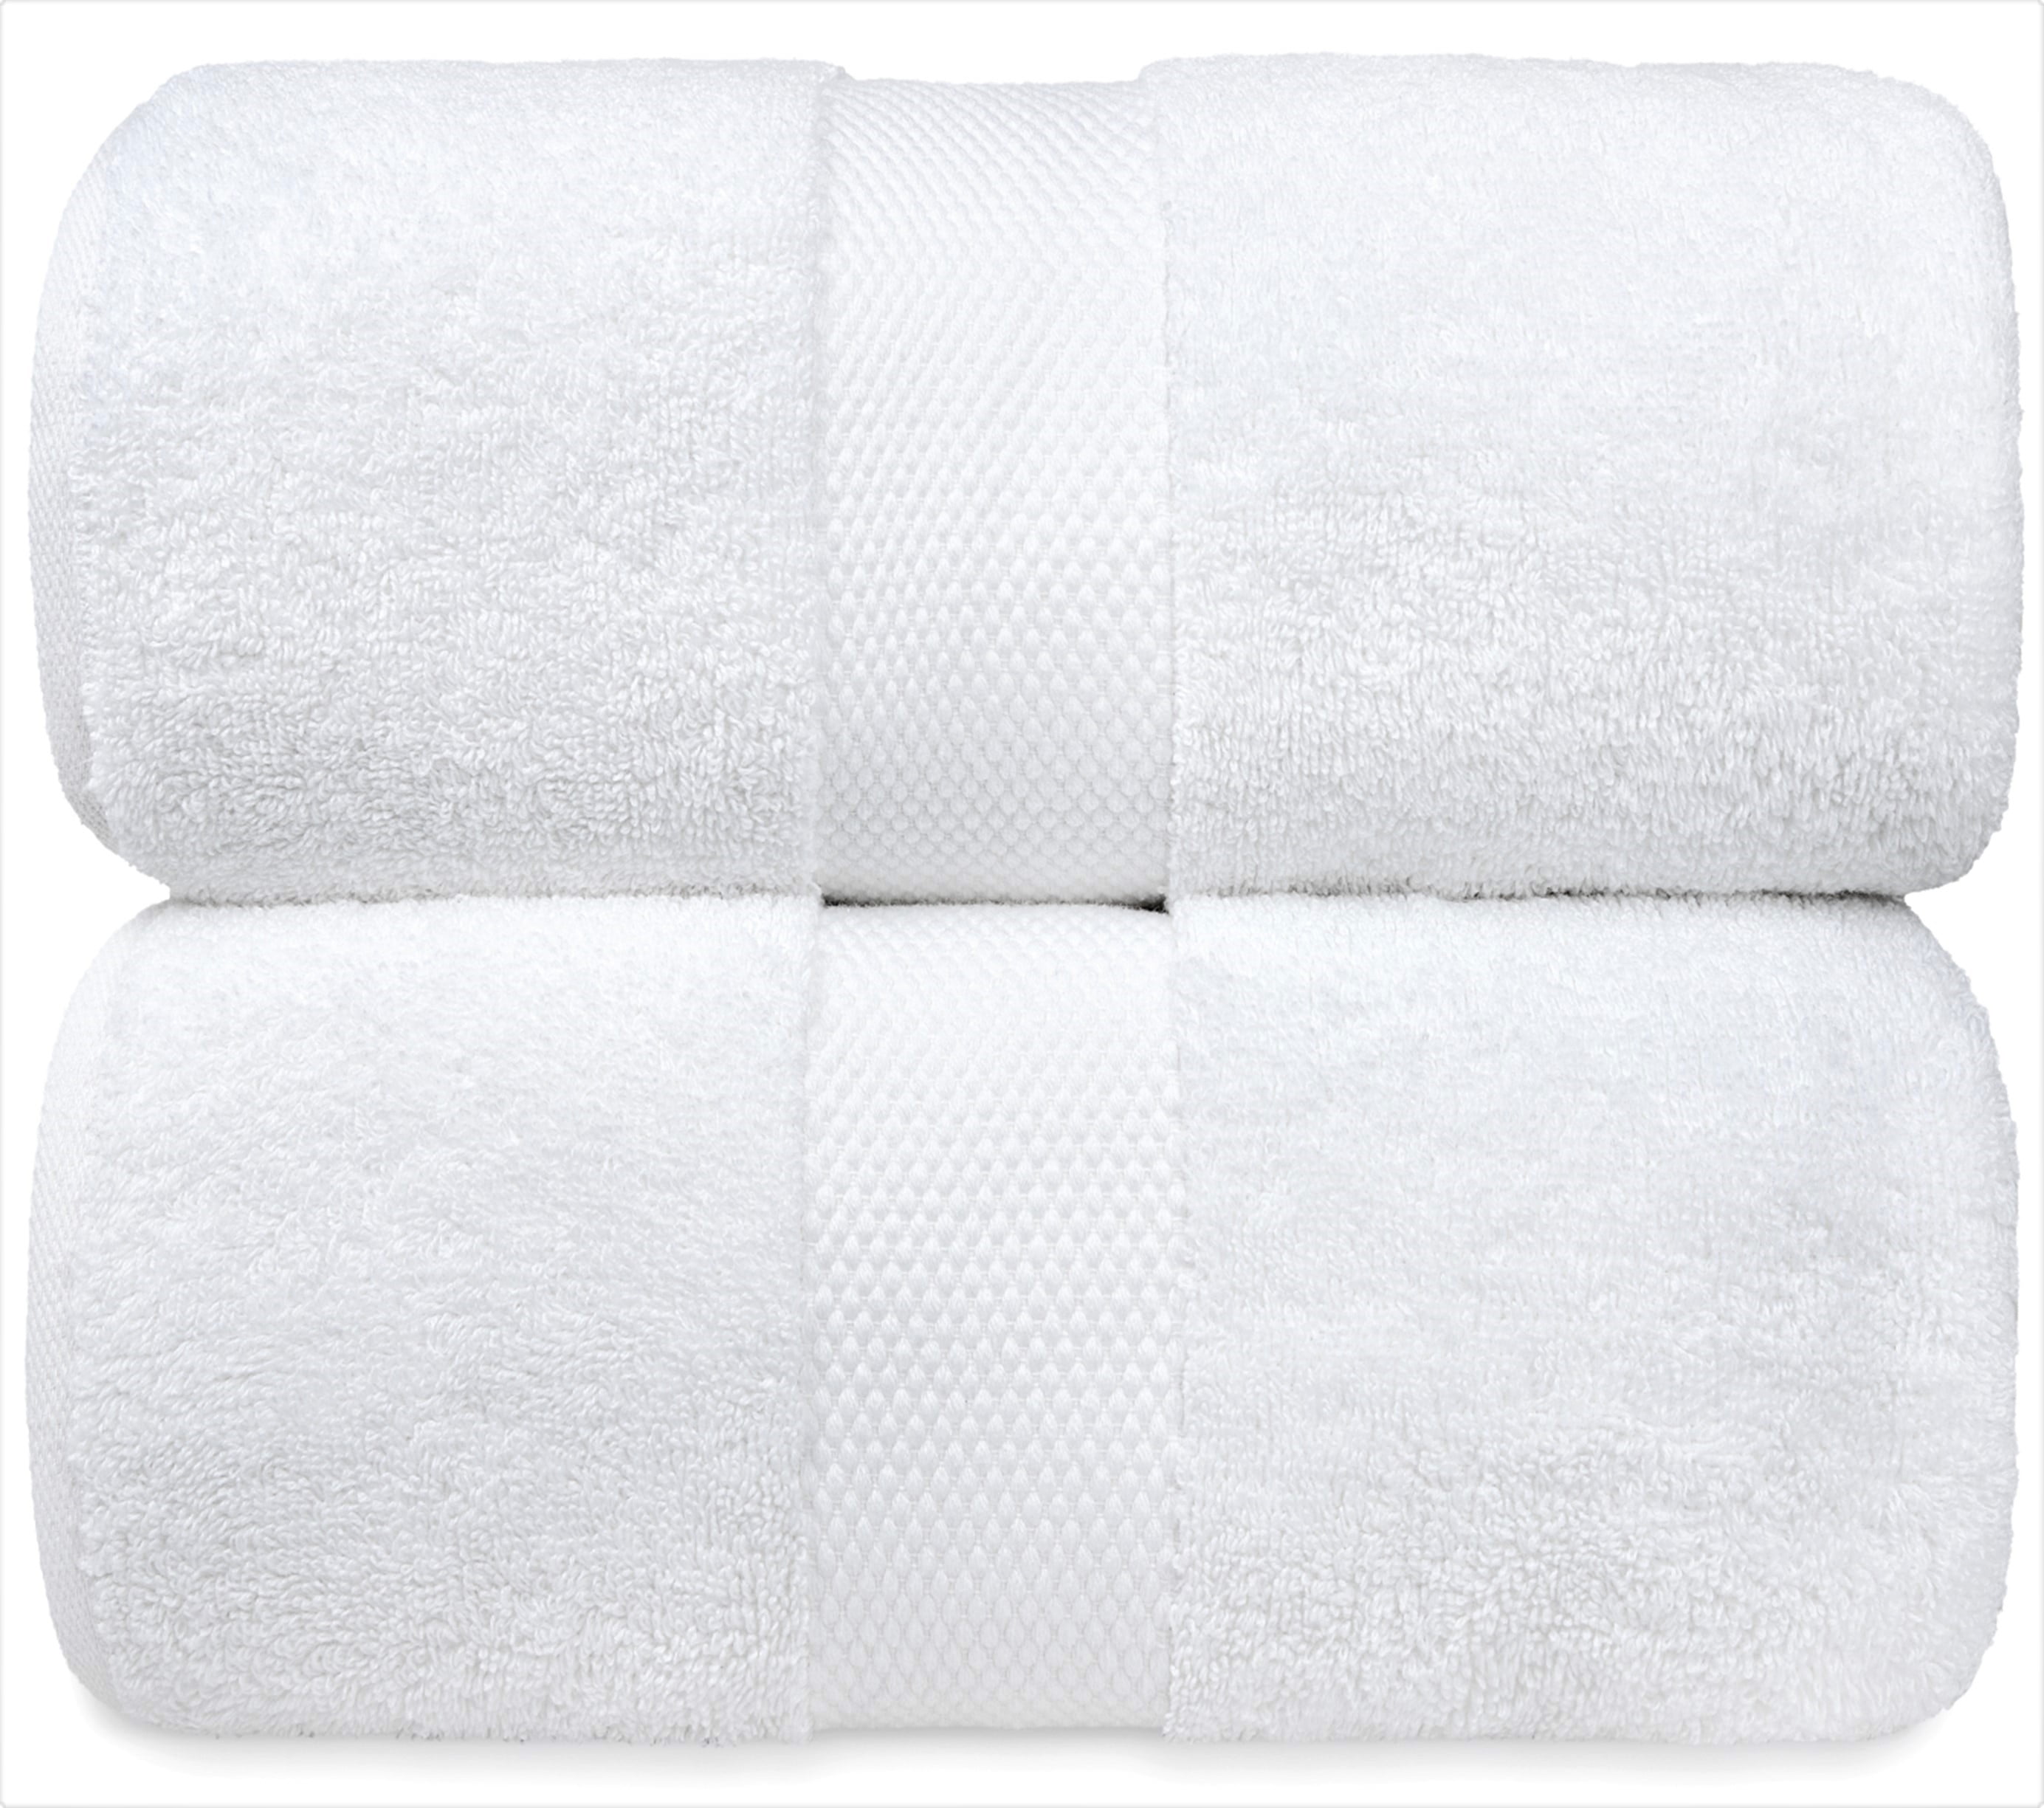 1 Dozen NEW Bath Towels 24 x 50 Cotton Blend White Soft Luxury Hotel Resort Home 